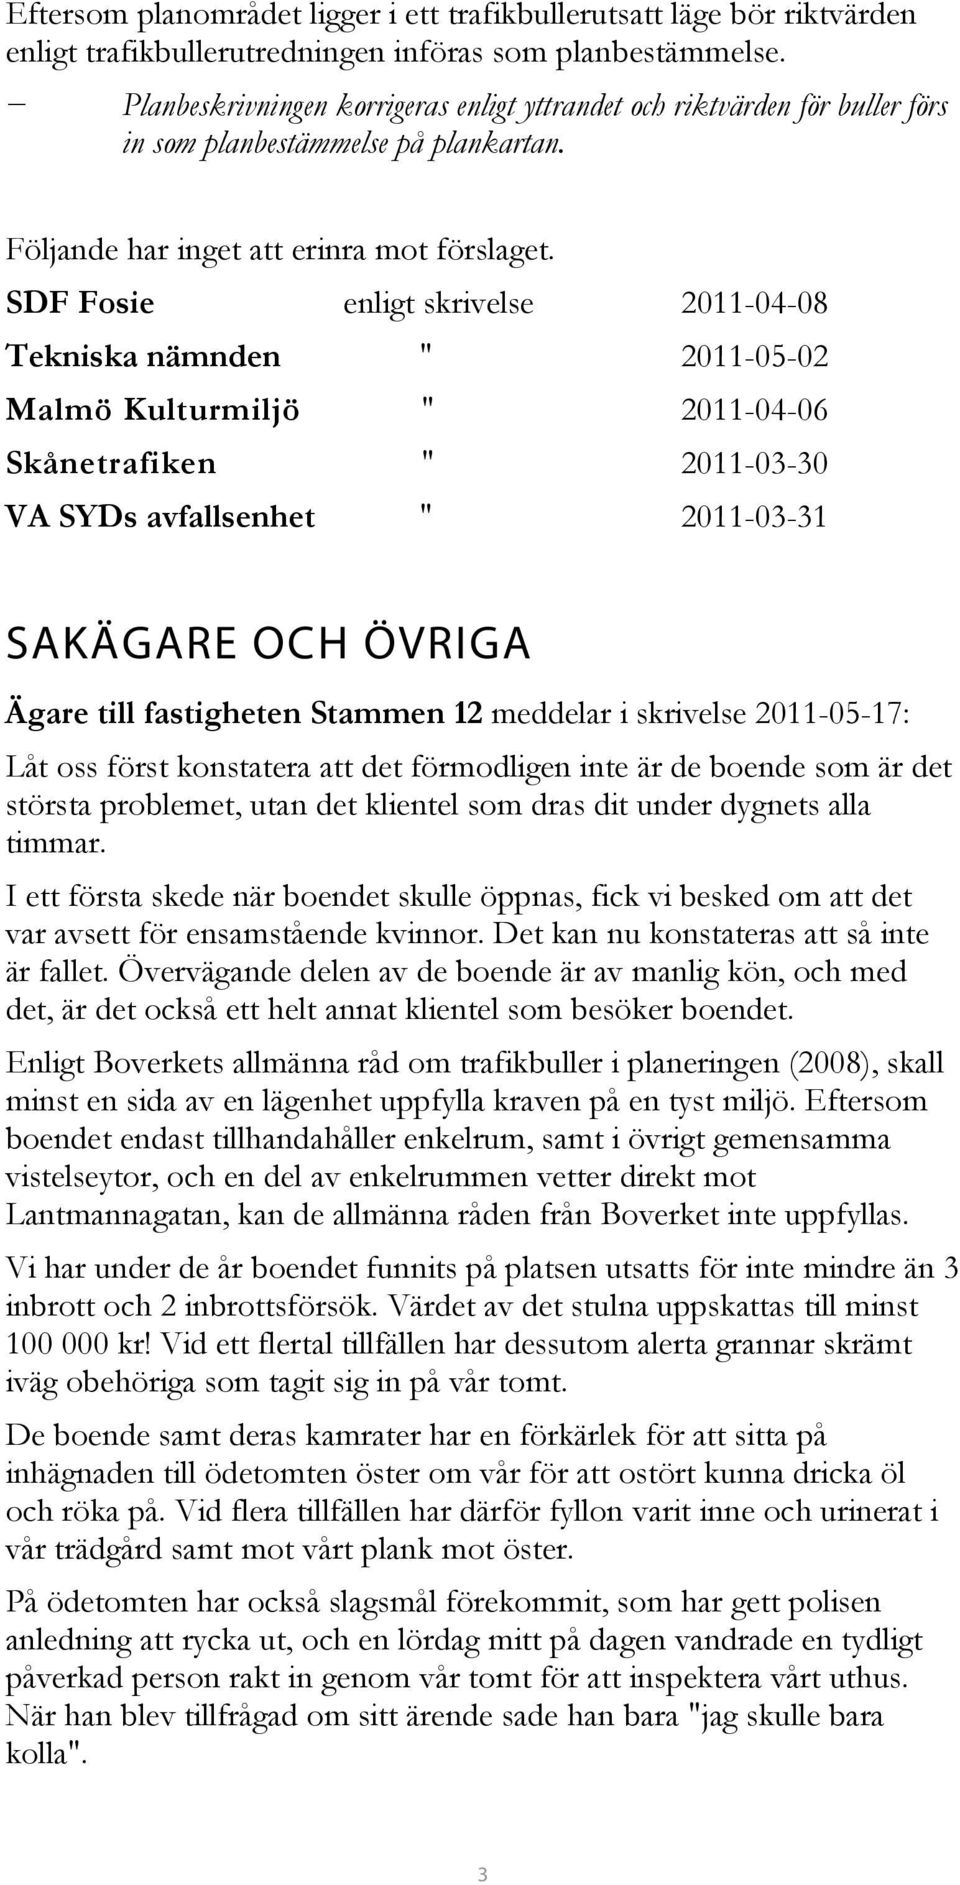 SDF Fosie enligt skrivelse 2011-04-08 Tekniska nämnden " 2011-05-02 Malmö Kulturmiljö " 2011-04-06 Skånetrafiken " 2011-03-30 VA SYDs avfallsenhet " 2011-03-31 SAKÄGARE OCH ÖVRIGA Ägare till